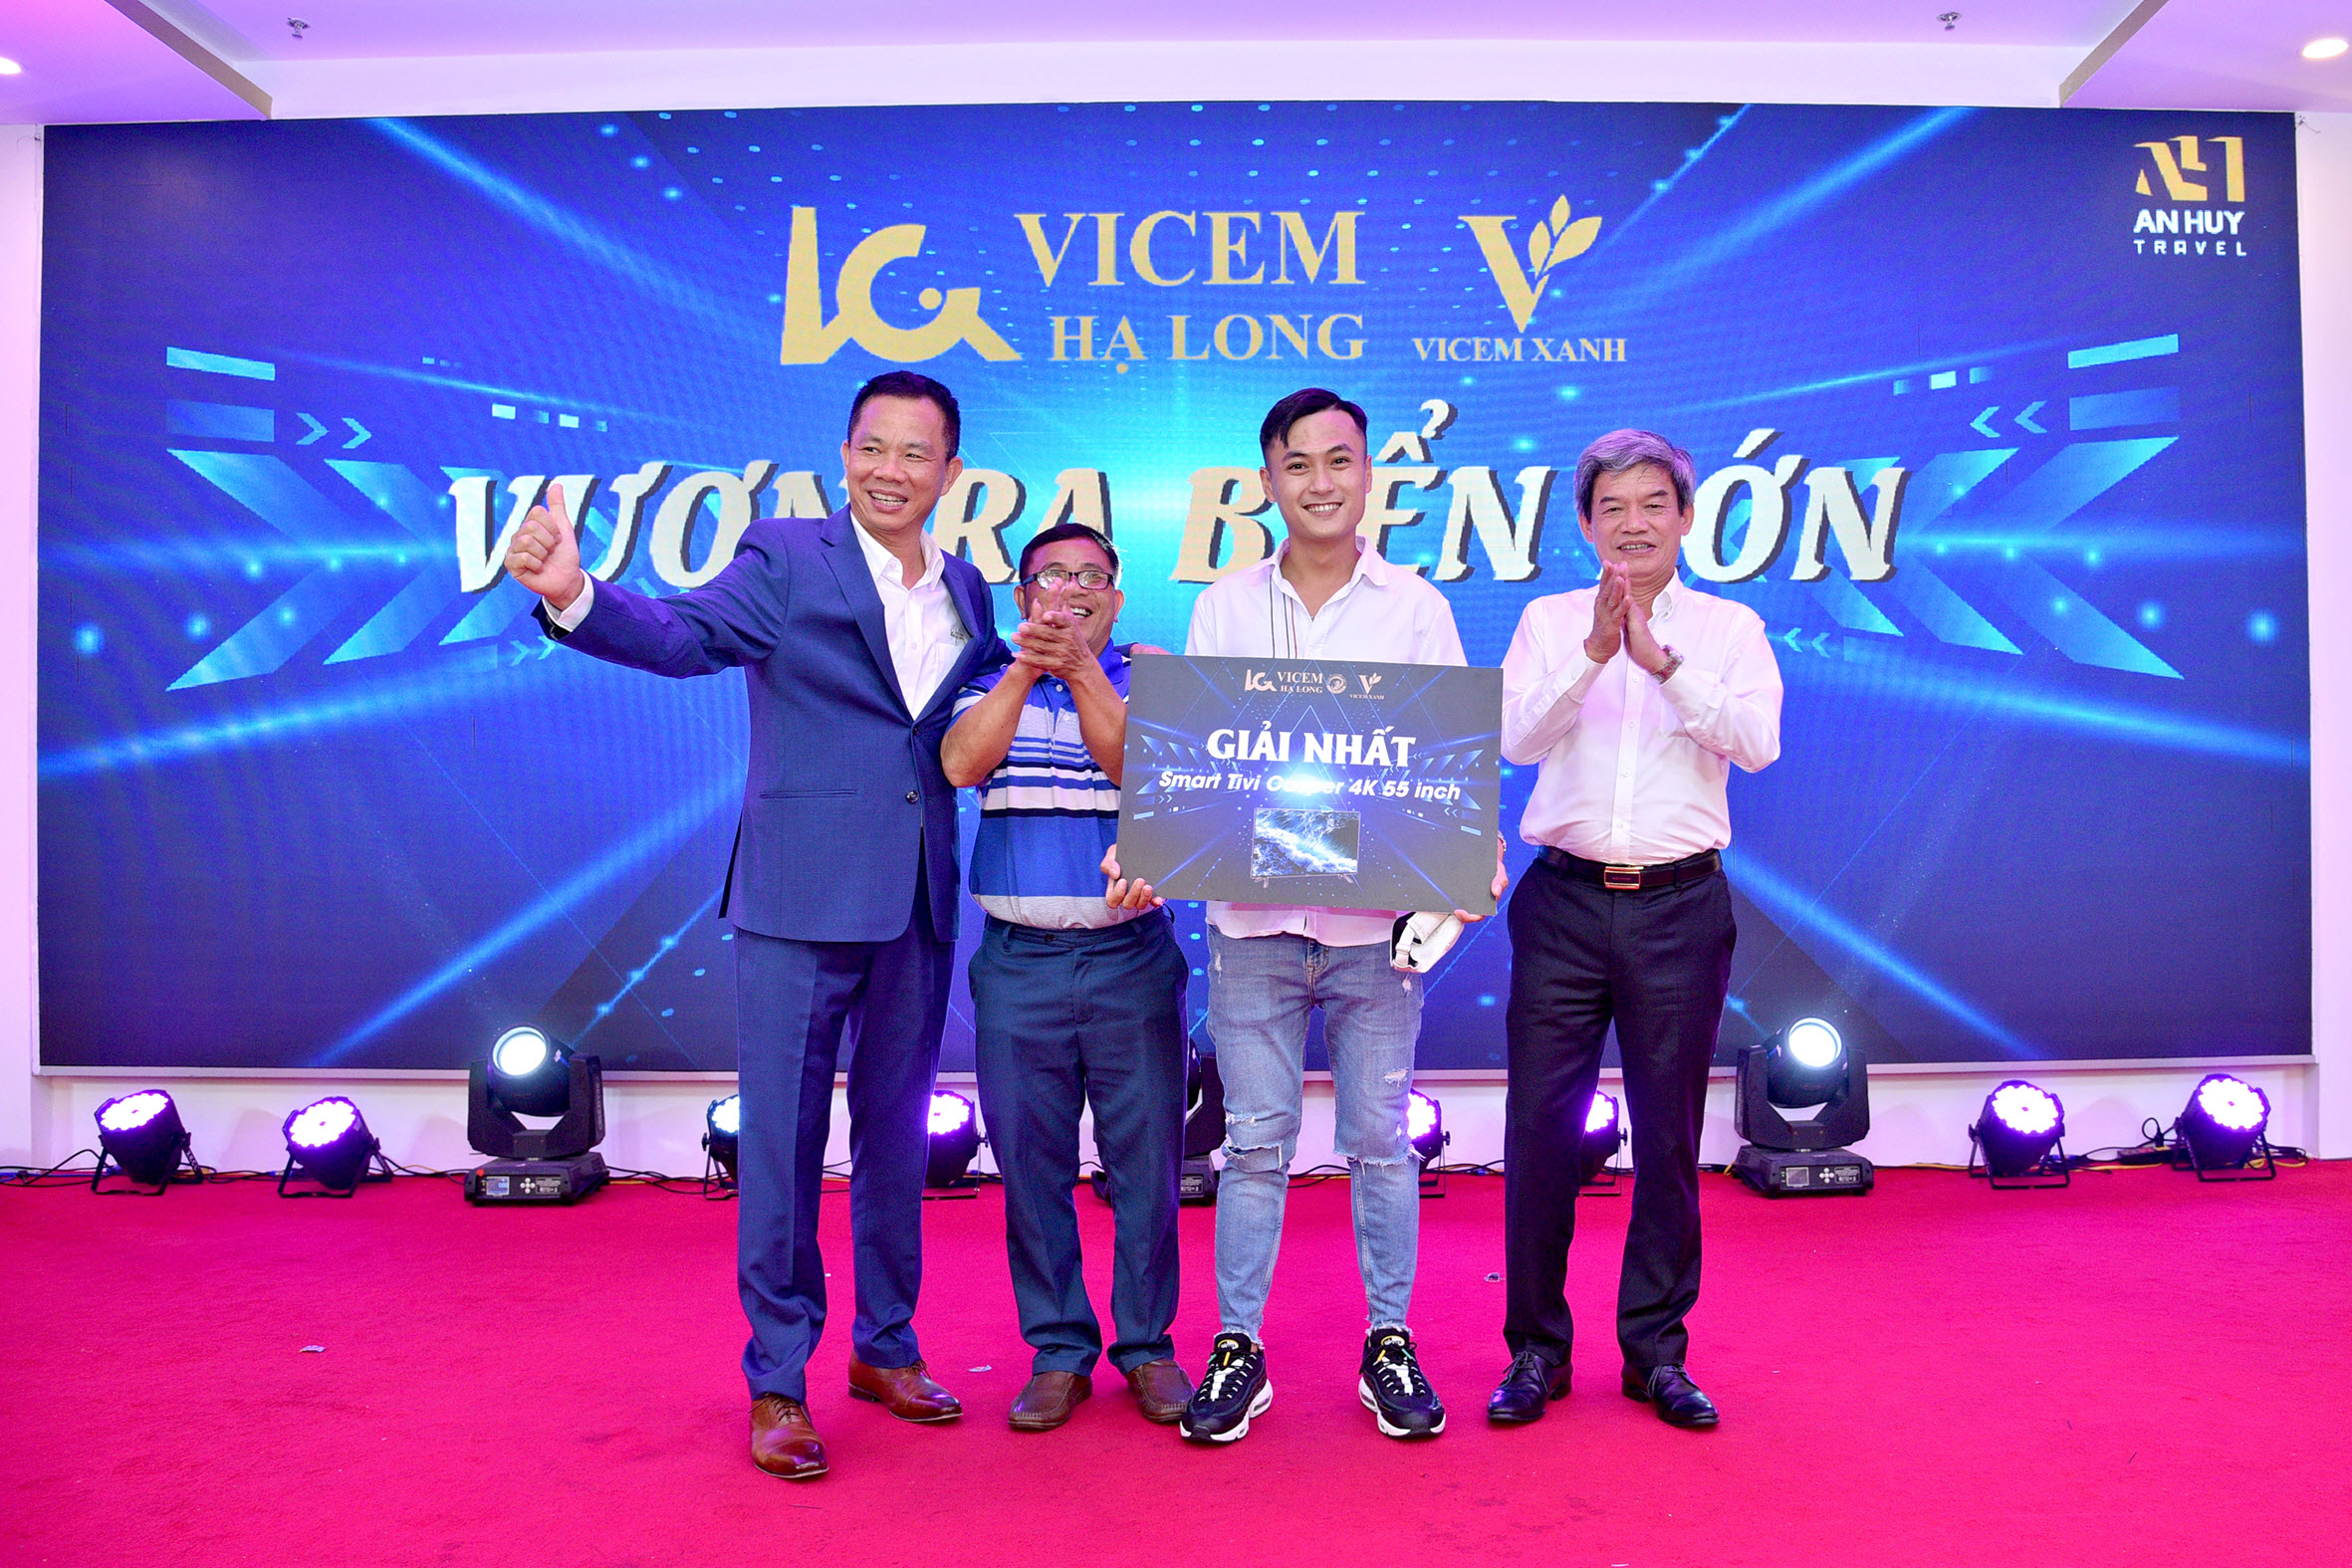 Ông Hoàng Cảnh Nguyễn, Giám đốc công ty (bên trái), Ông Nguyễn Văn Dung, Phó Giám đốc công ty (bên phải) trao giải nhất chp CHVLXD trúng thưởng trong chương trình